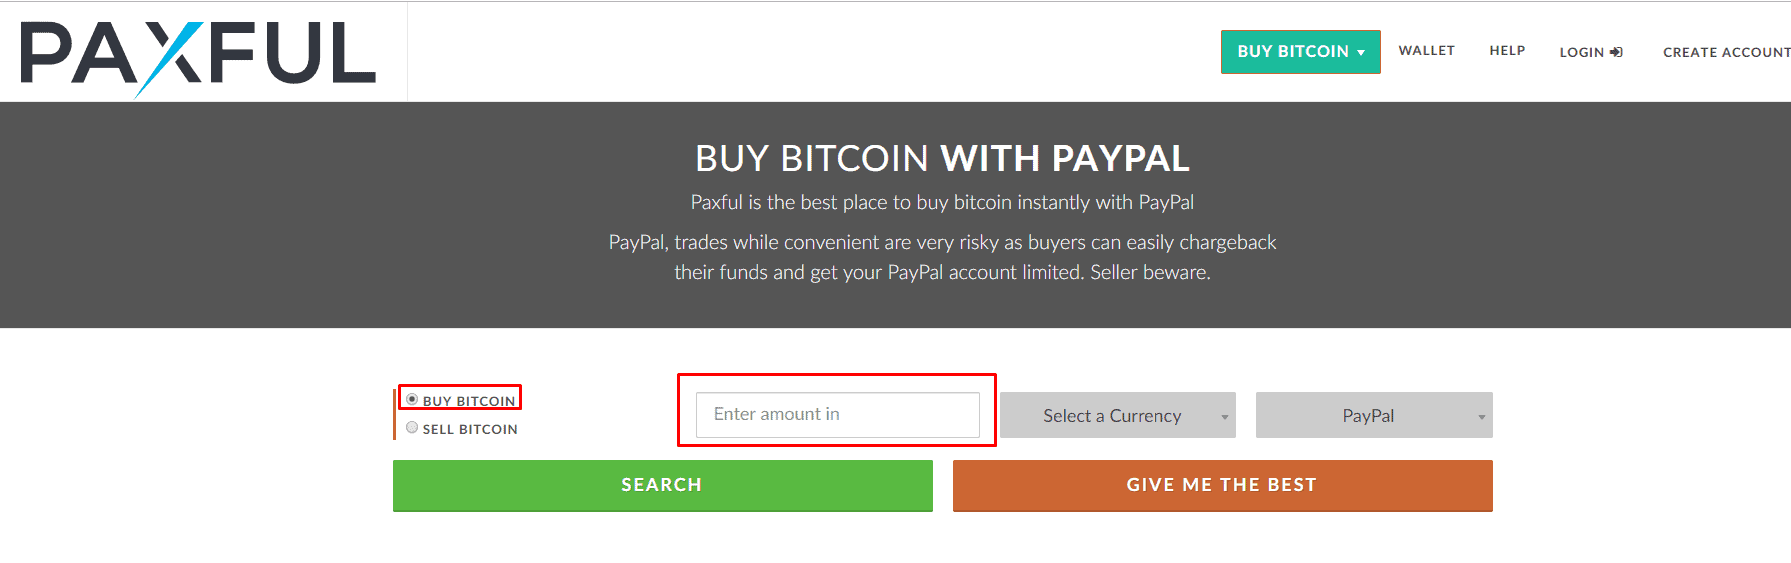 Buy bitcoin using paypal credit